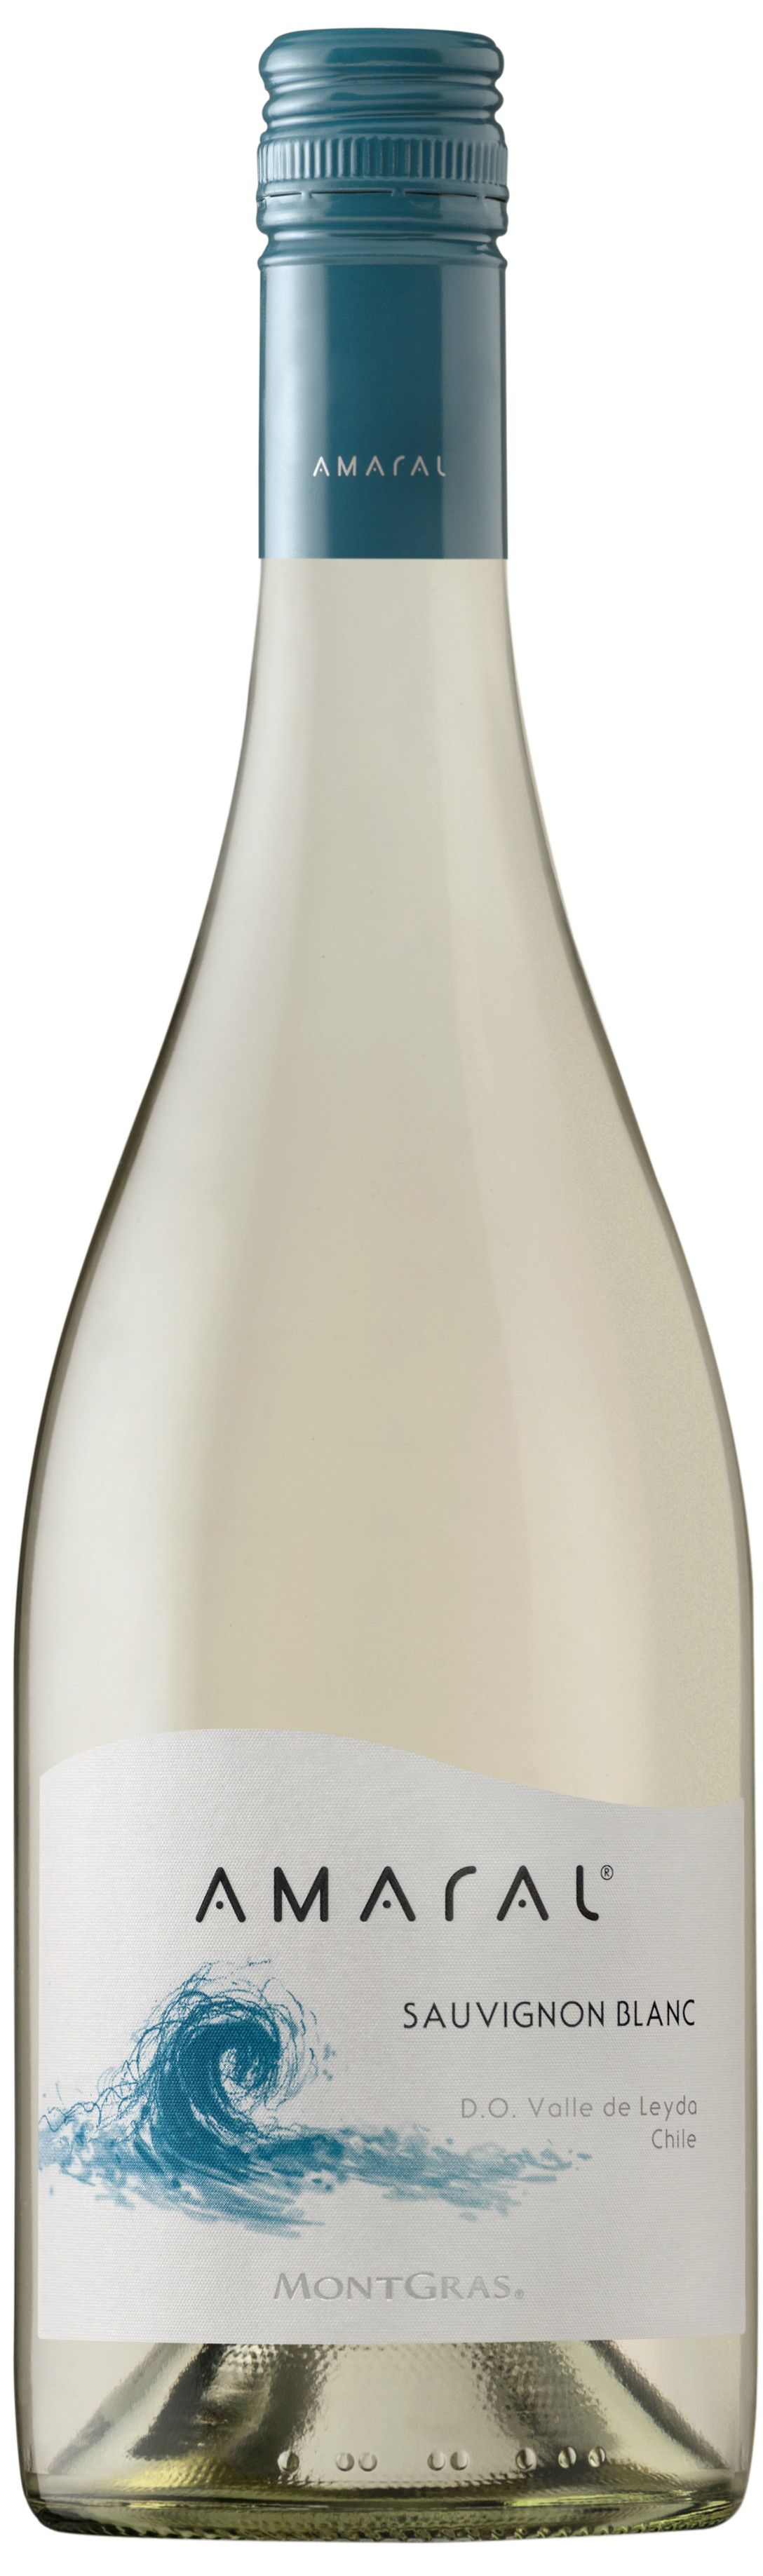 Montgras, Amaral Sauvignon Blanc, 2014